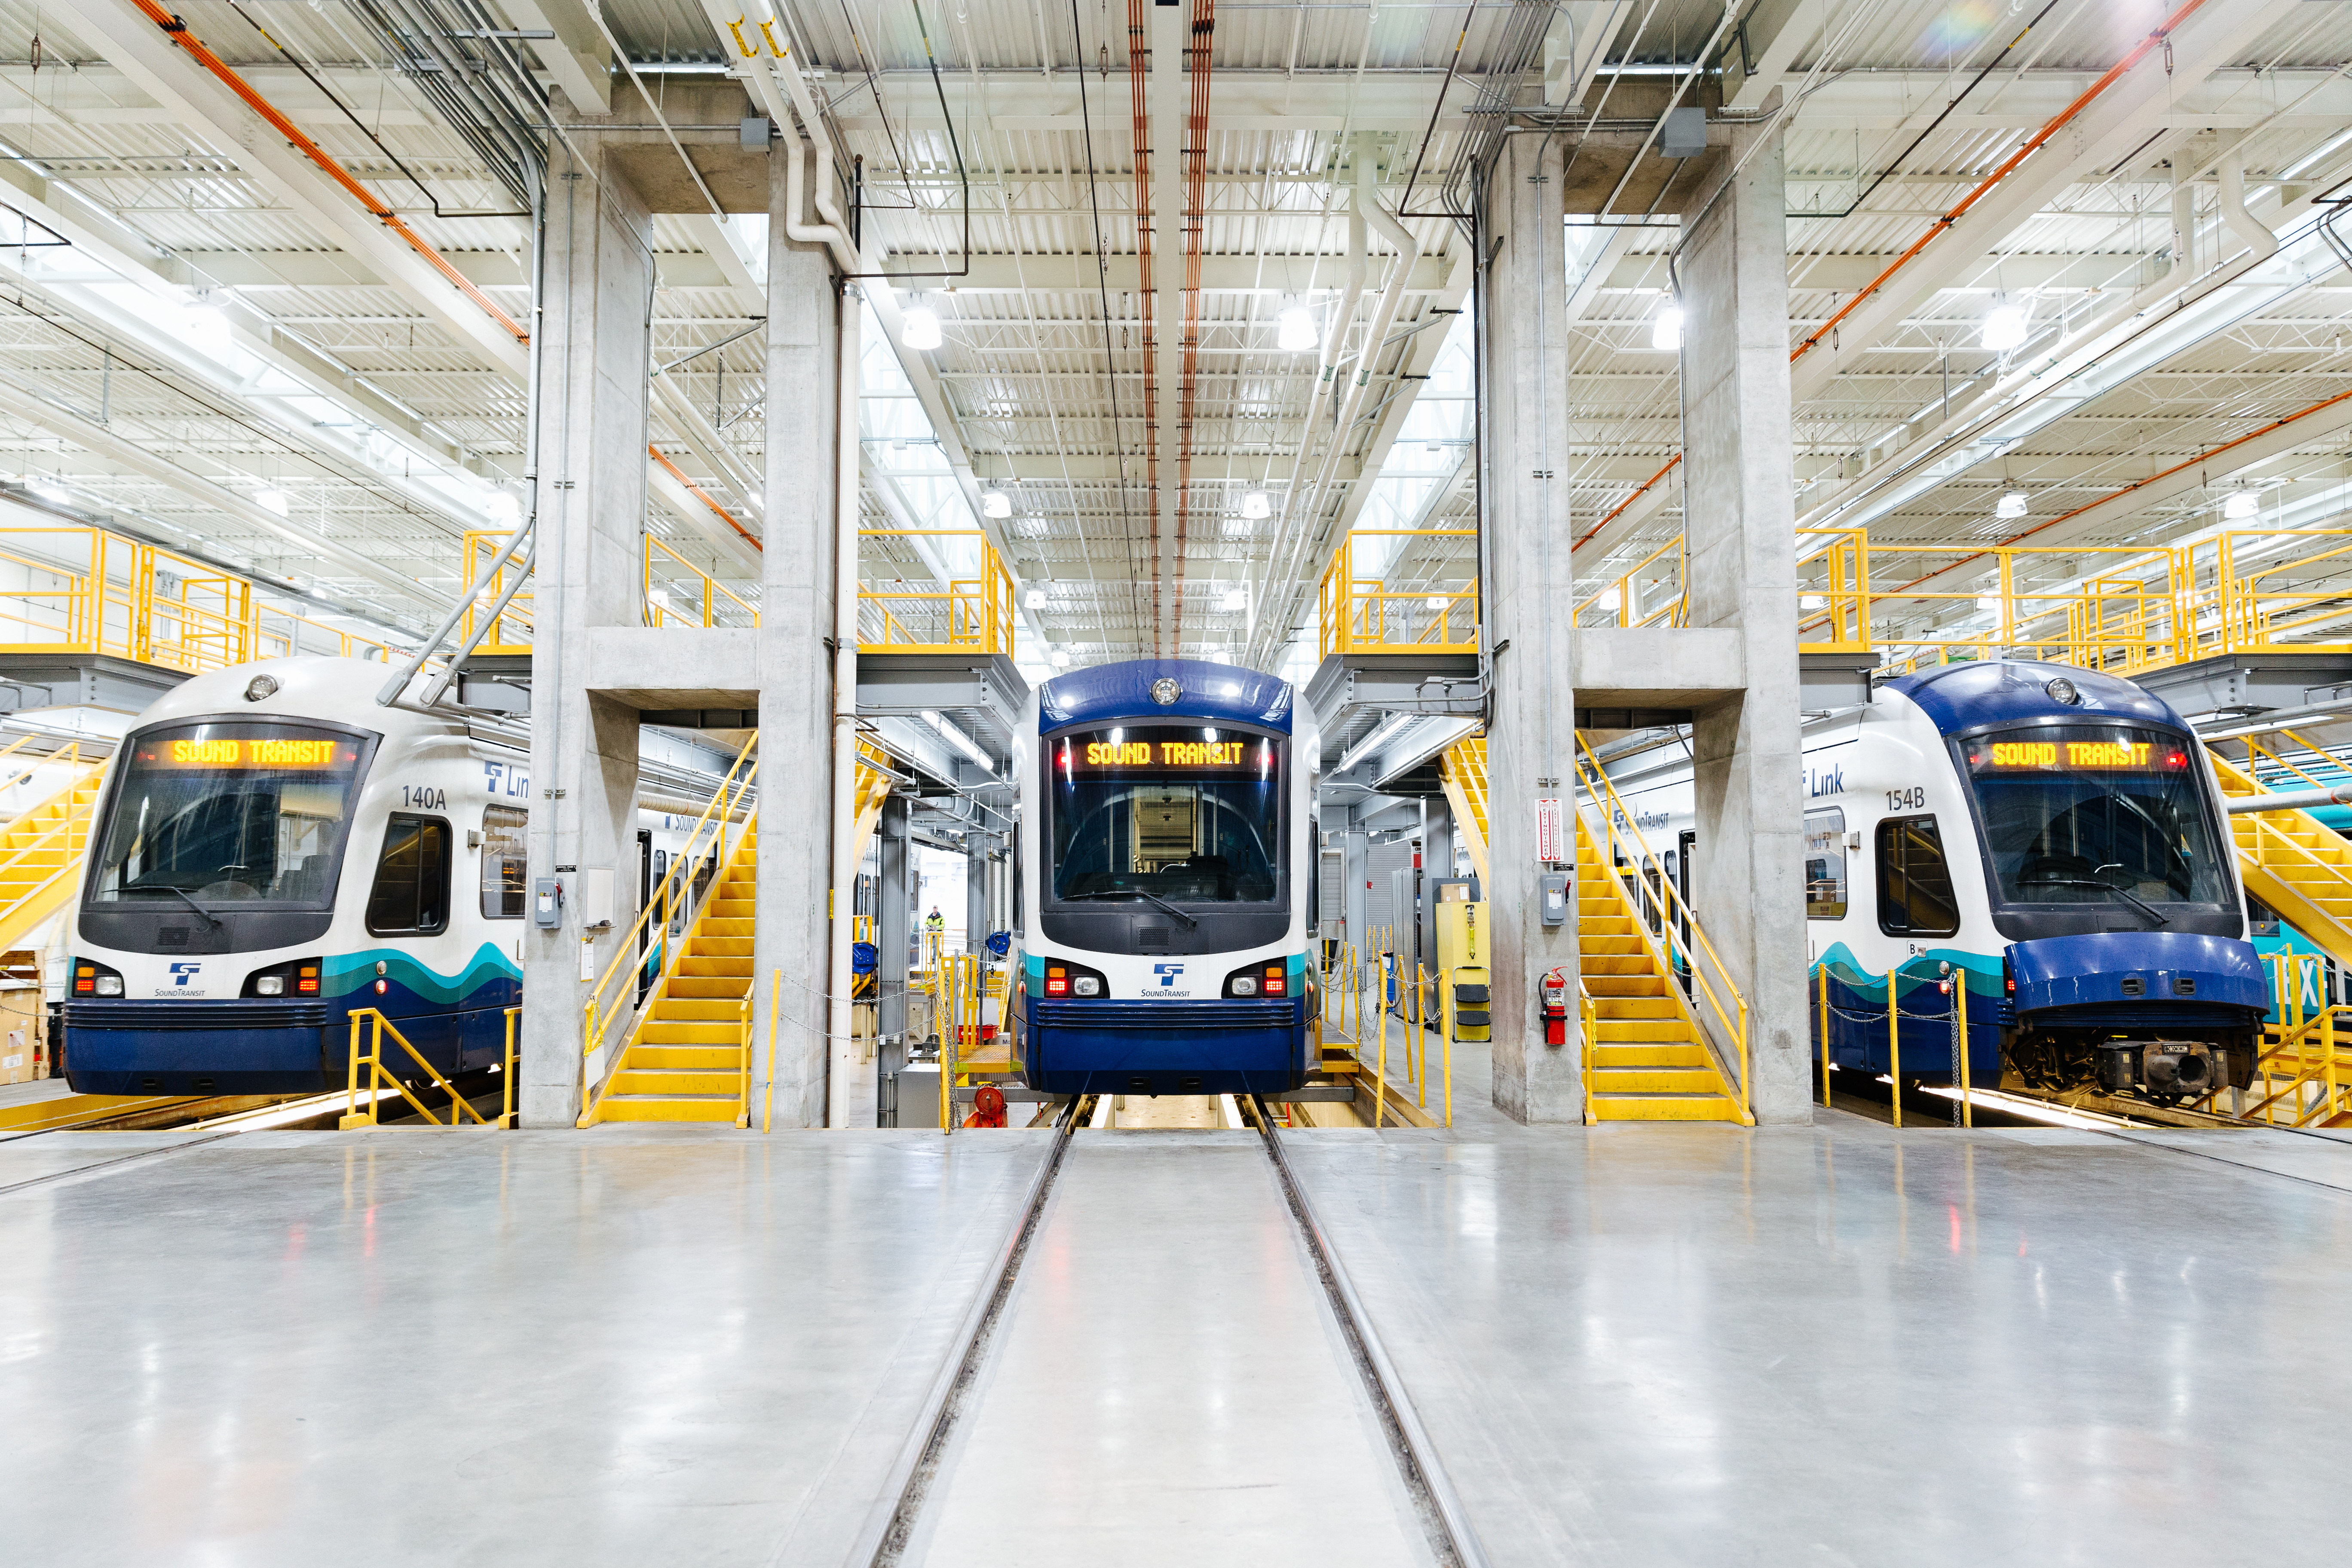 Поезда Link light rail устанавливаются на площадках для обслуживания в складском здании Link. На платформе предусмотрены лестницы, так что рабочие могут получить доступ как к верхней, так и к нижней части поезда для выполнения планового обслуживания.